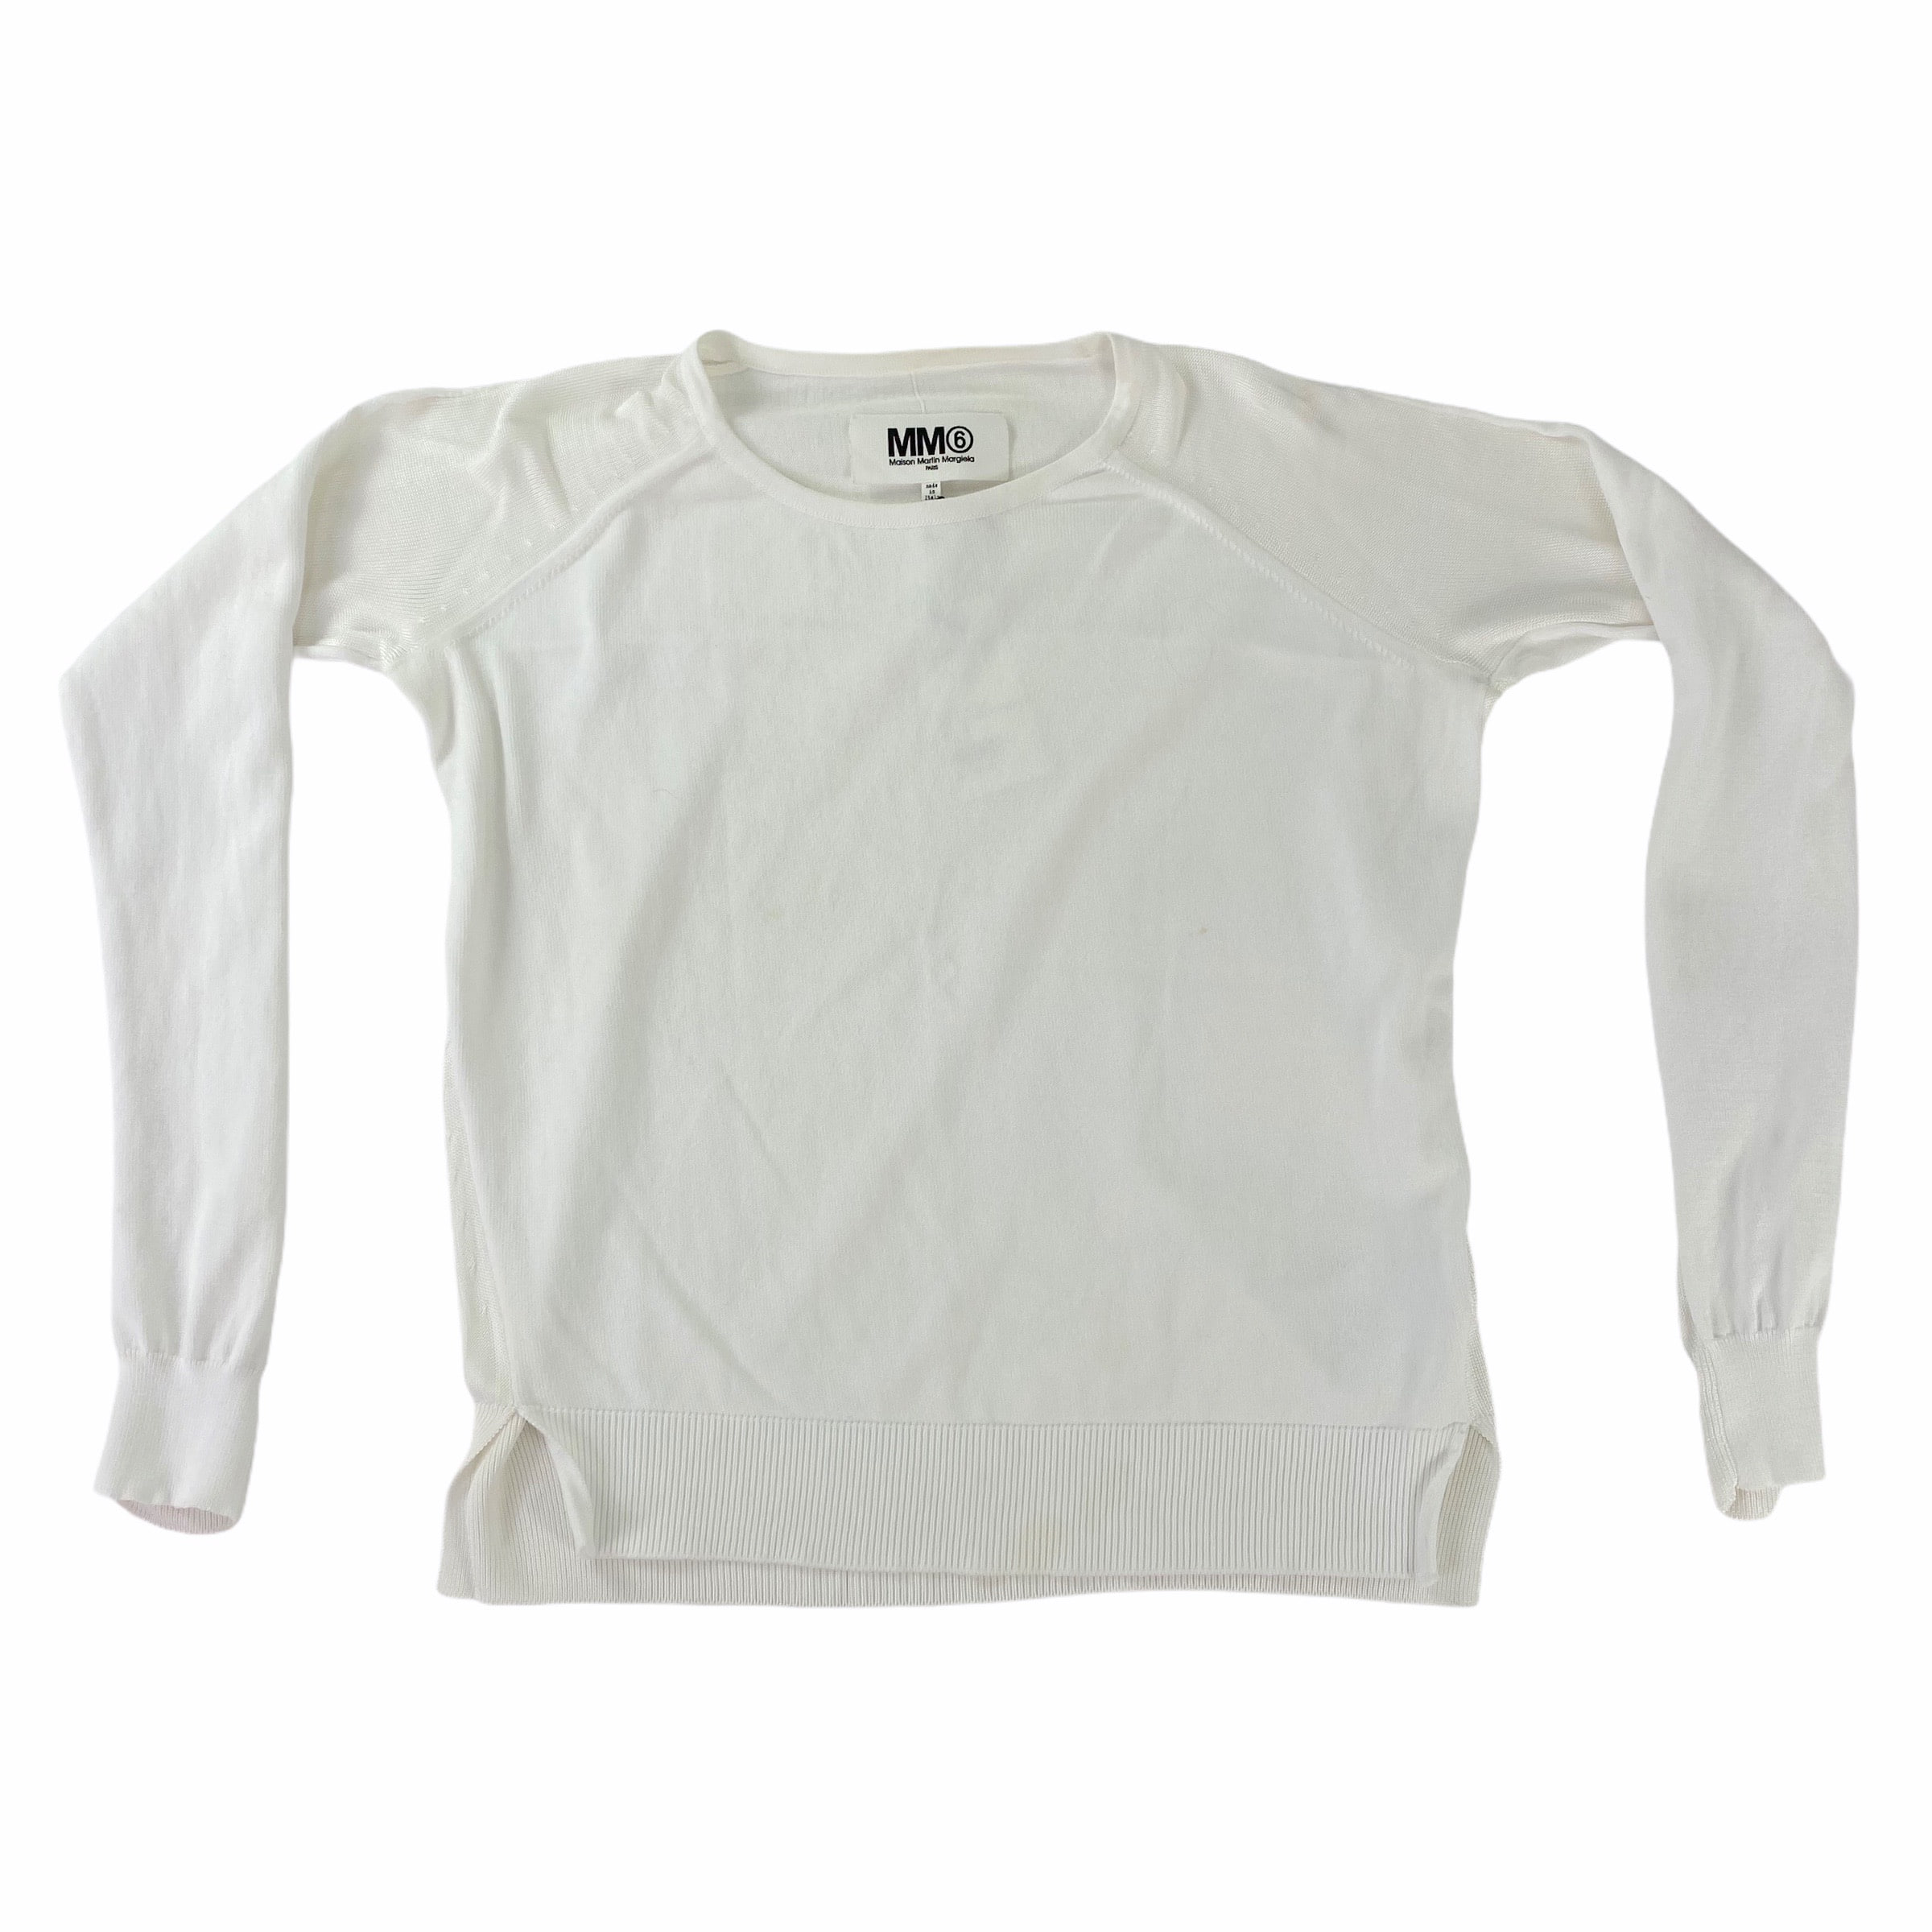 [Margiela] White Sweater - Size S